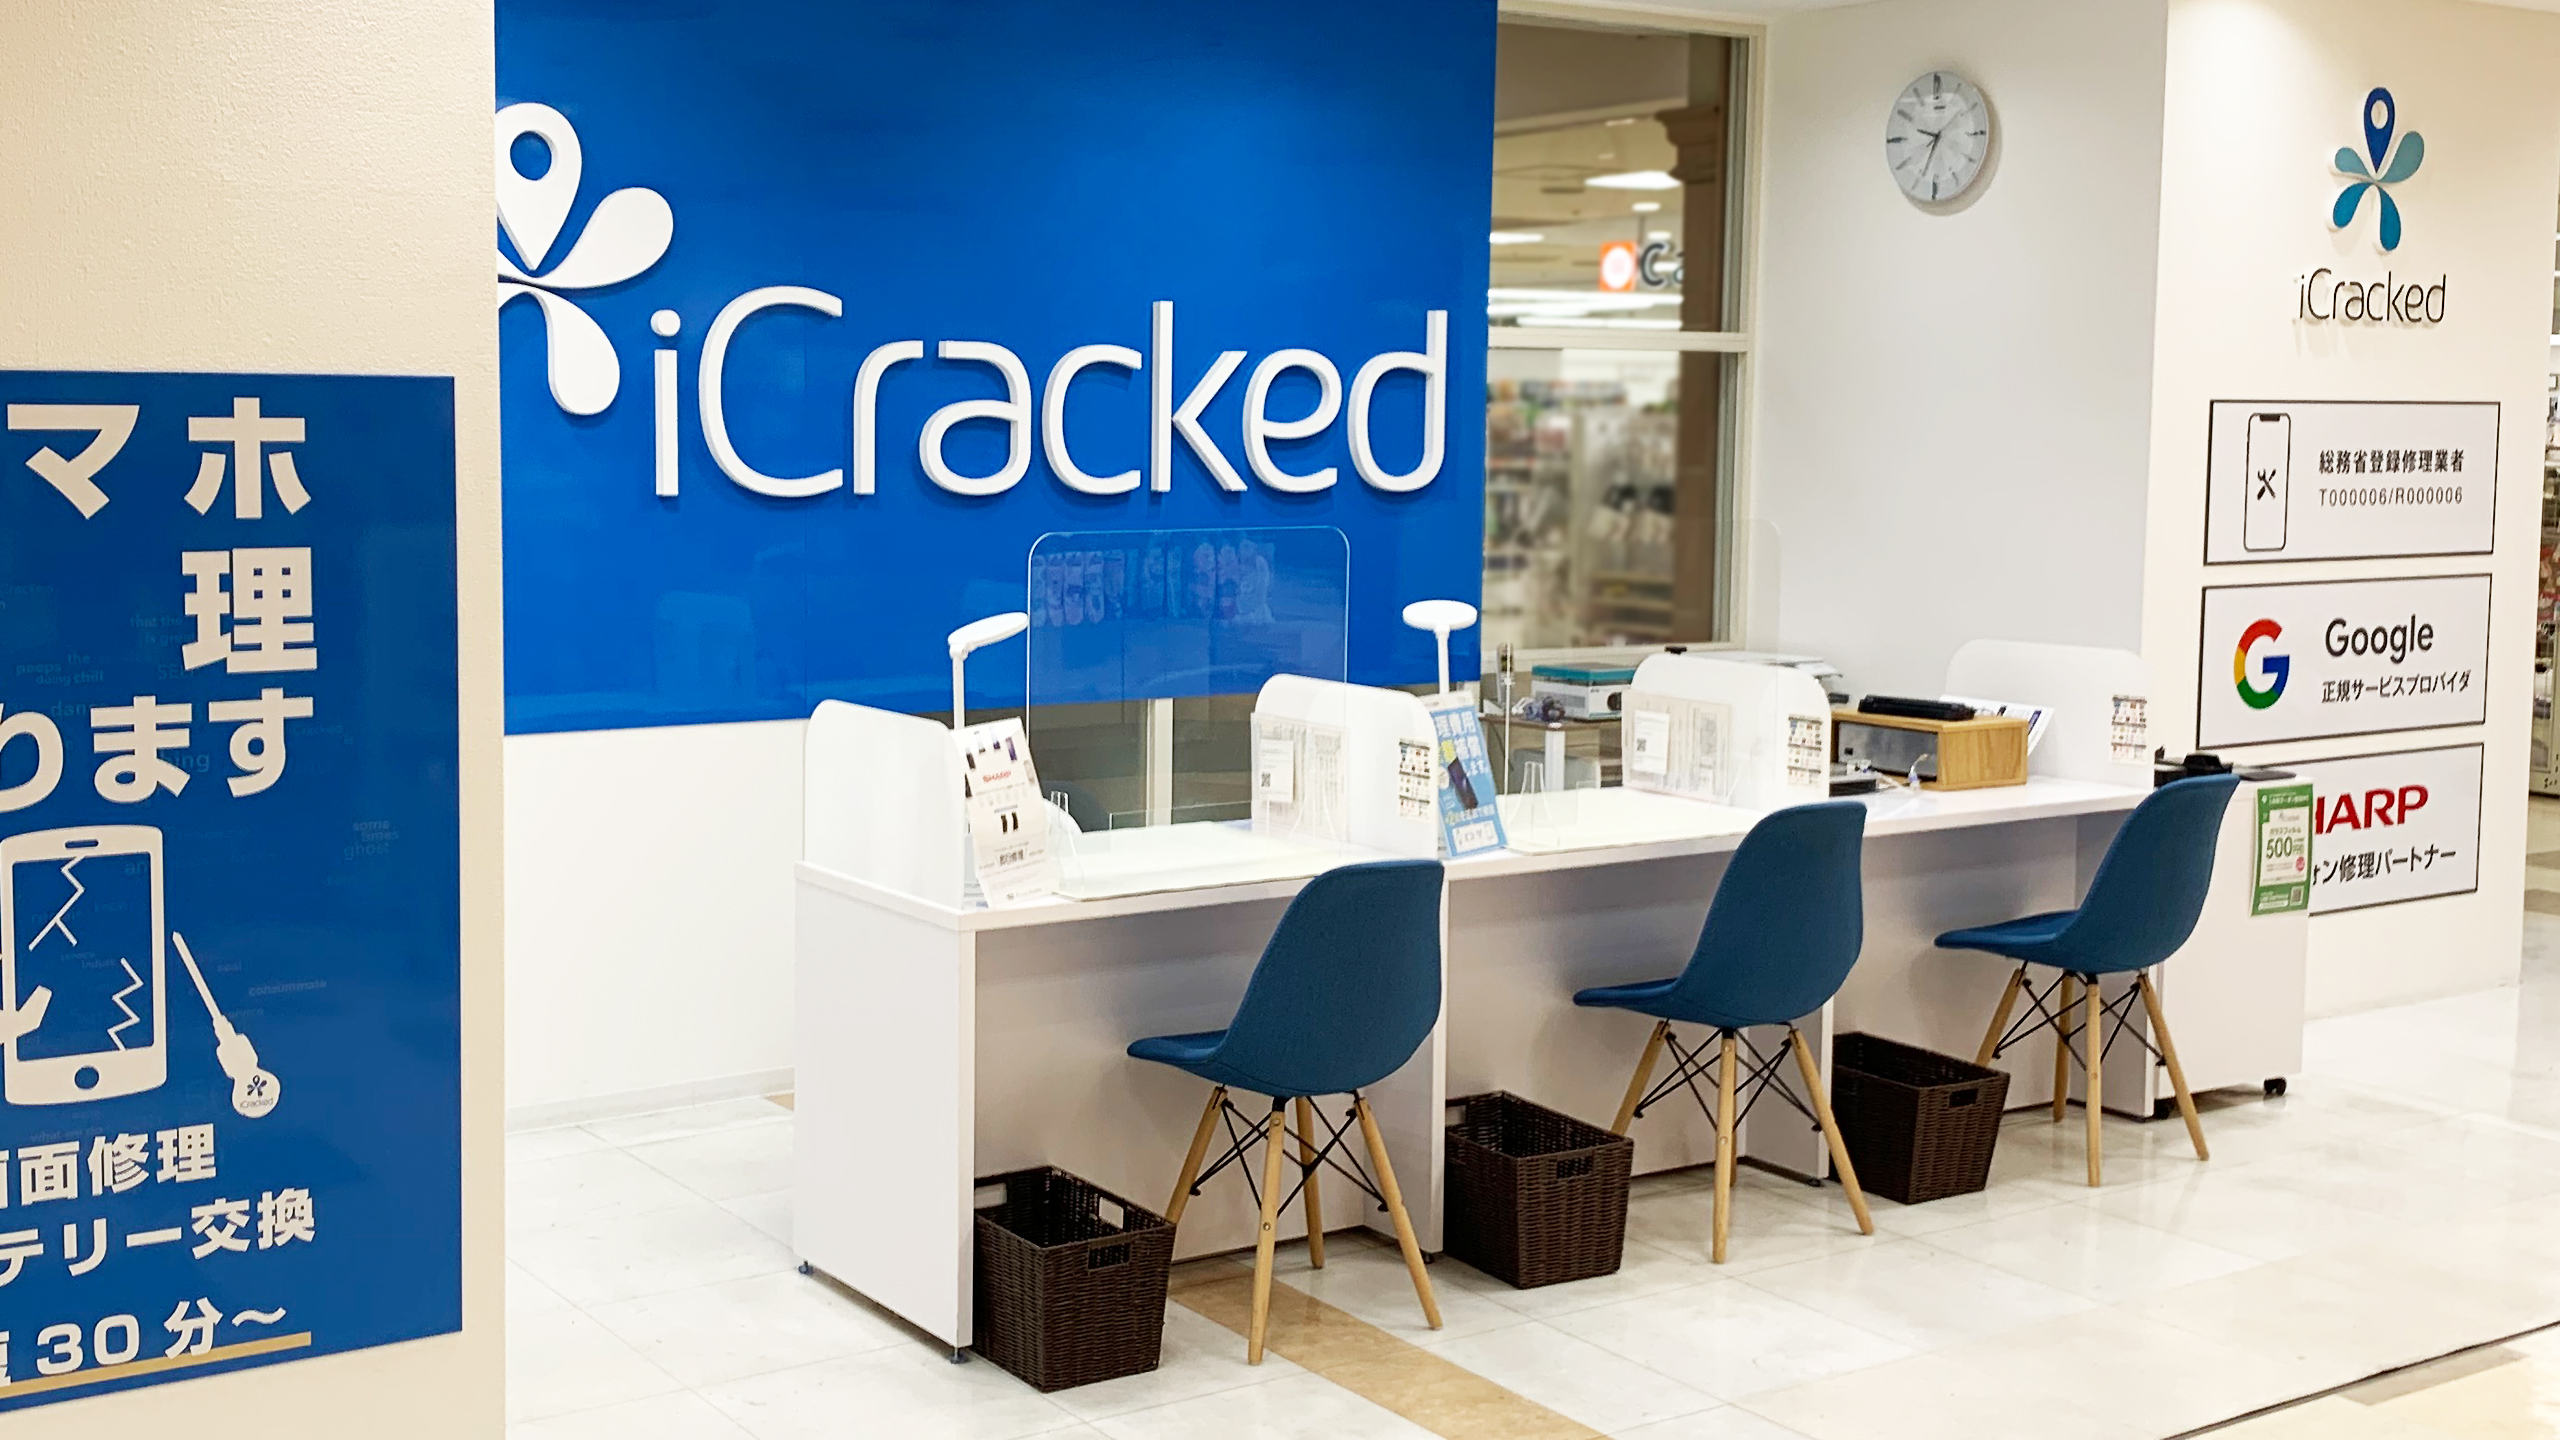 iCracked Store VAL小山の店舗画像